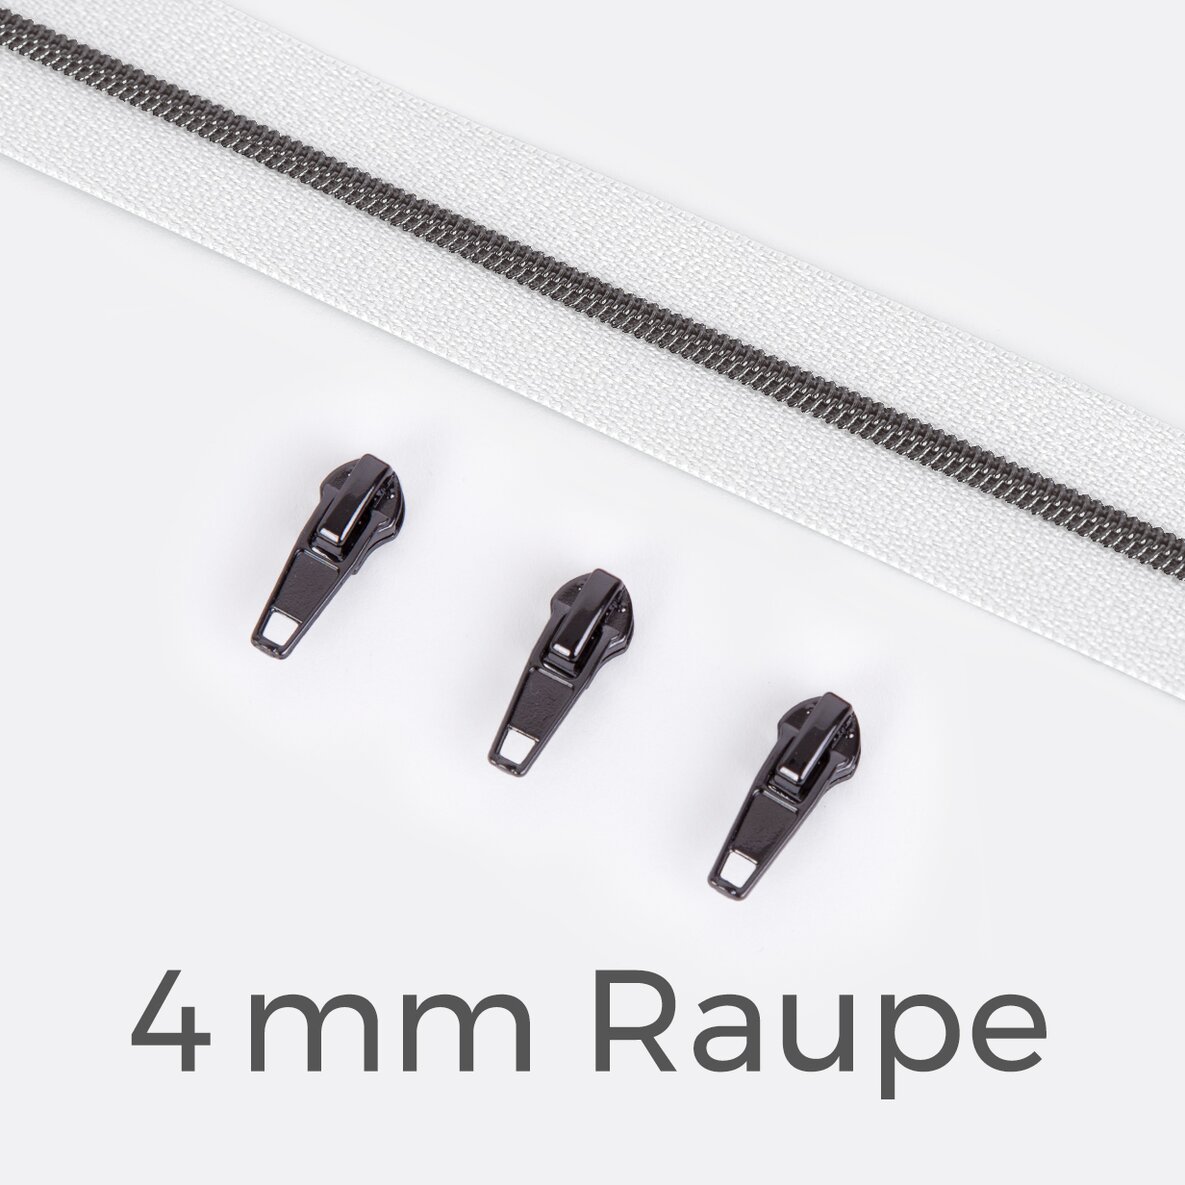 Endlos Reißverschluss gunmetal metallisiert weiss 4 mm Raupe